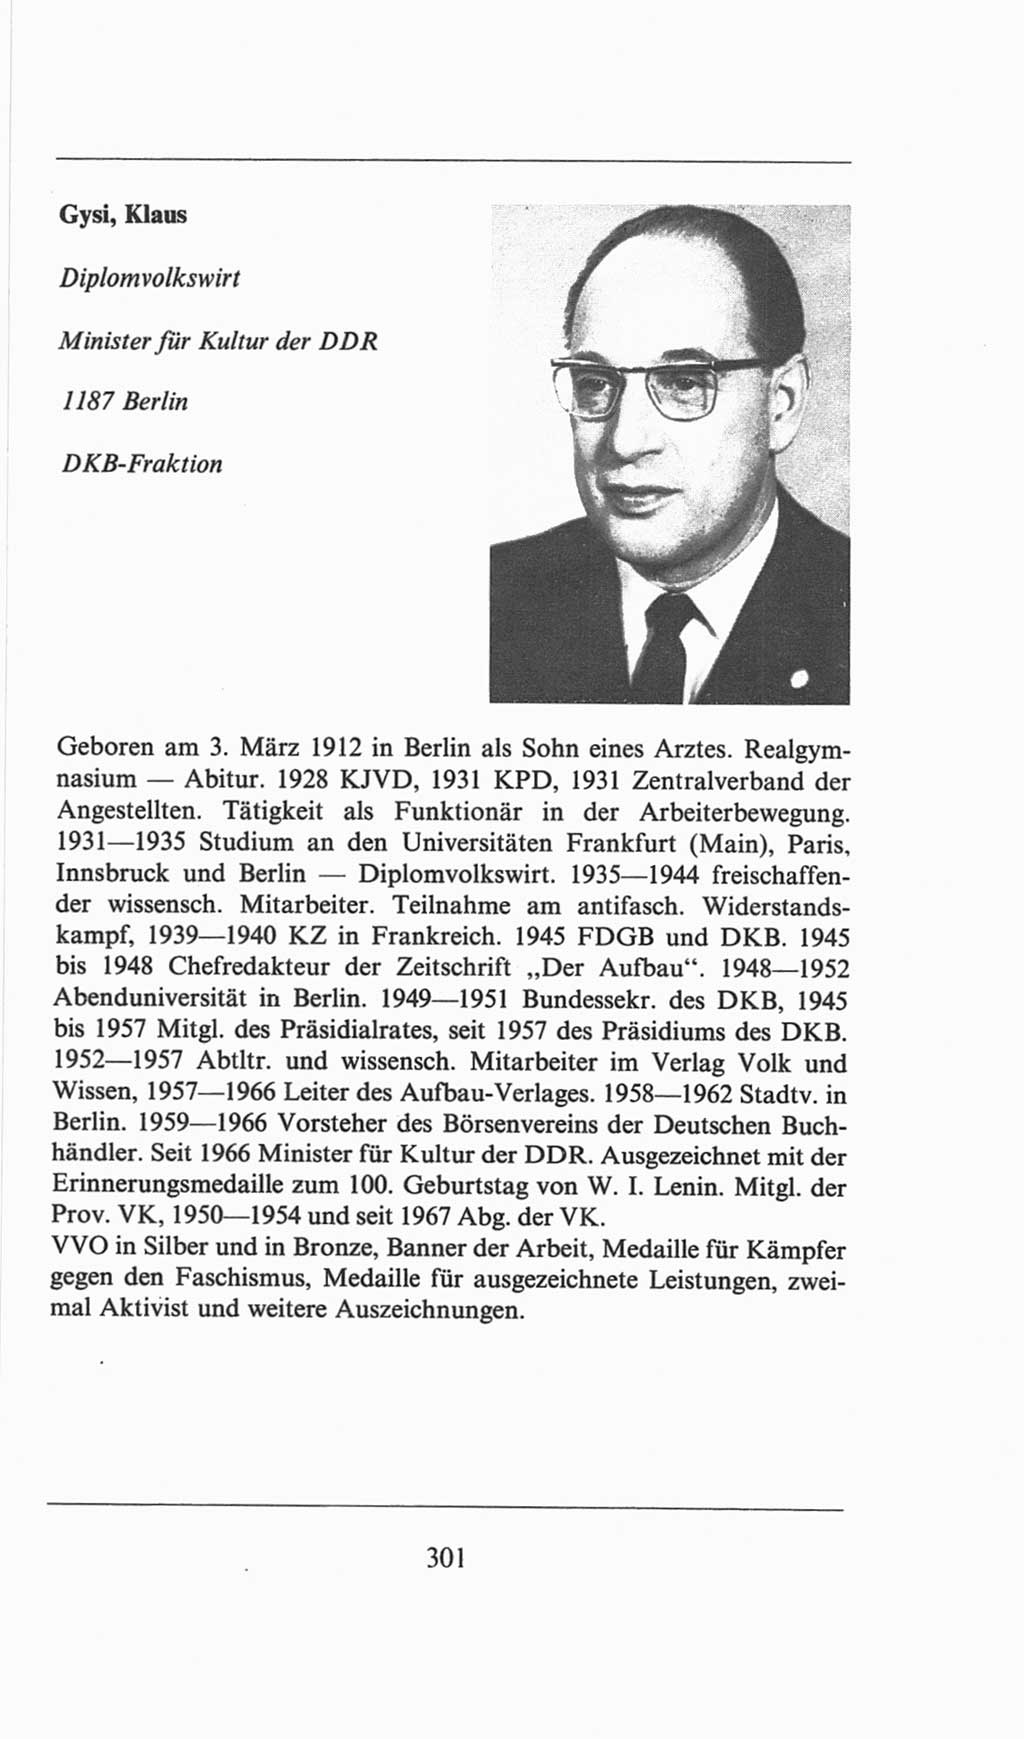 Volkskammer (VK) der Deutschen Demokratischen Republik (DDR), 6. Wahlperiode 1971-1976, Seite 301 (VK. DDR 6. WP. 1971-1976, S. 301)